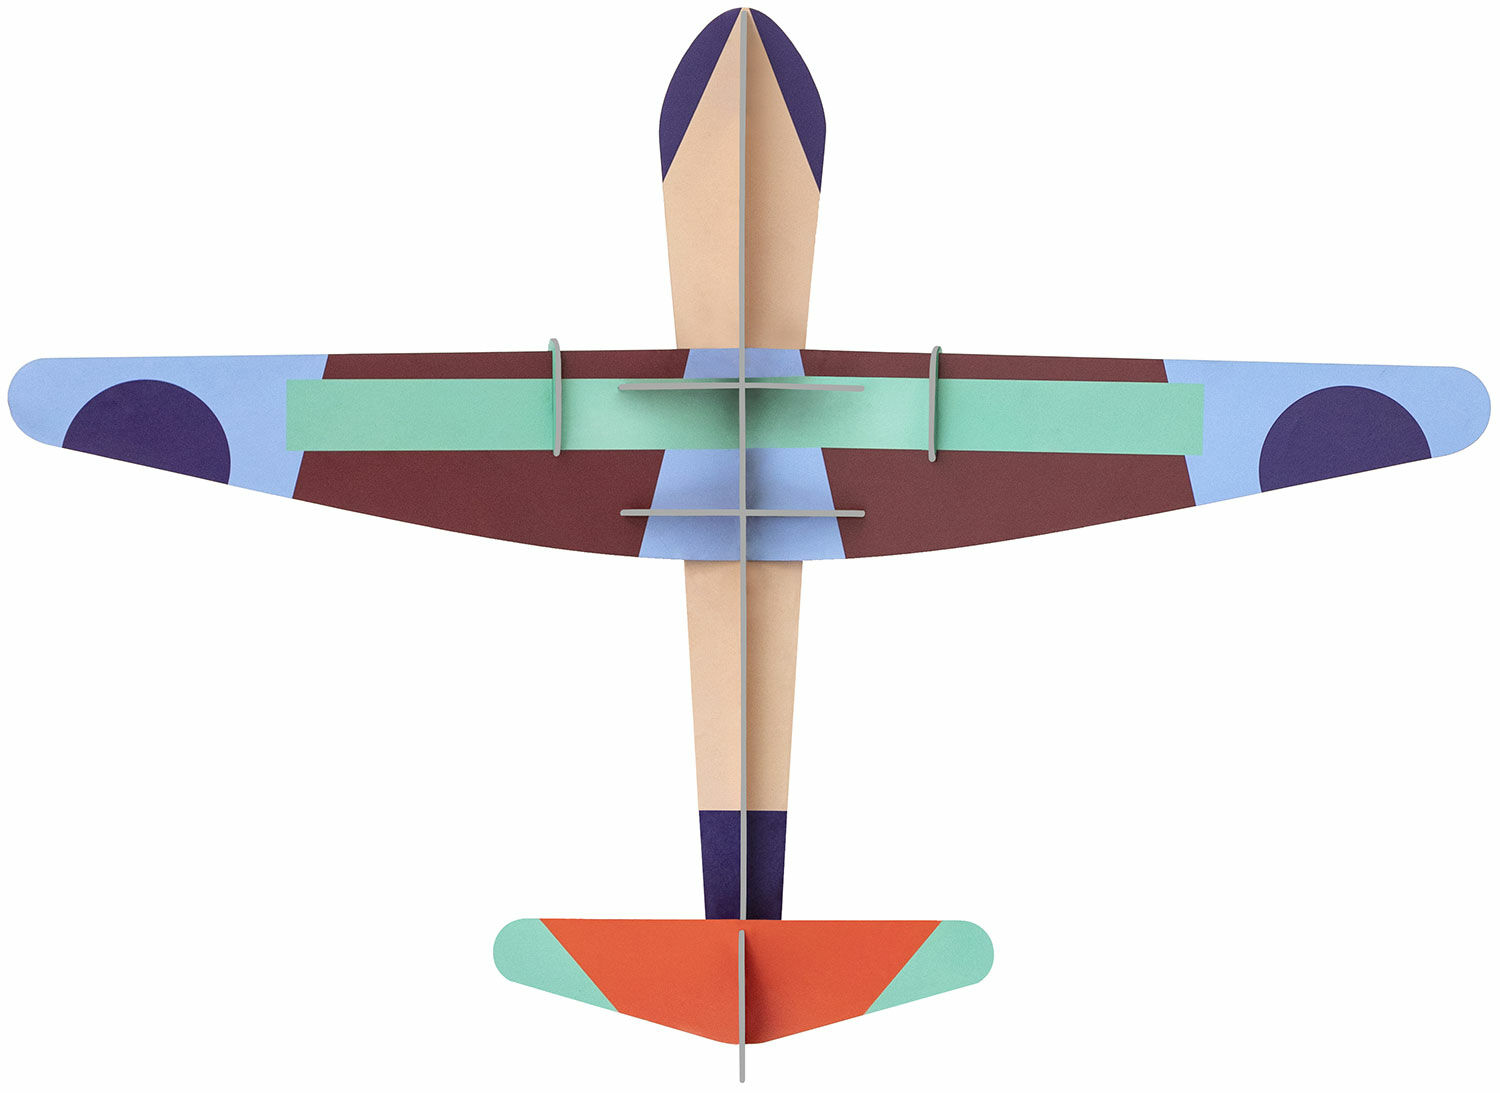 3D-väggobjekt "Deluxe Glider Plane" tillverkat av återvunnen kartong, DIY von studio ROOF